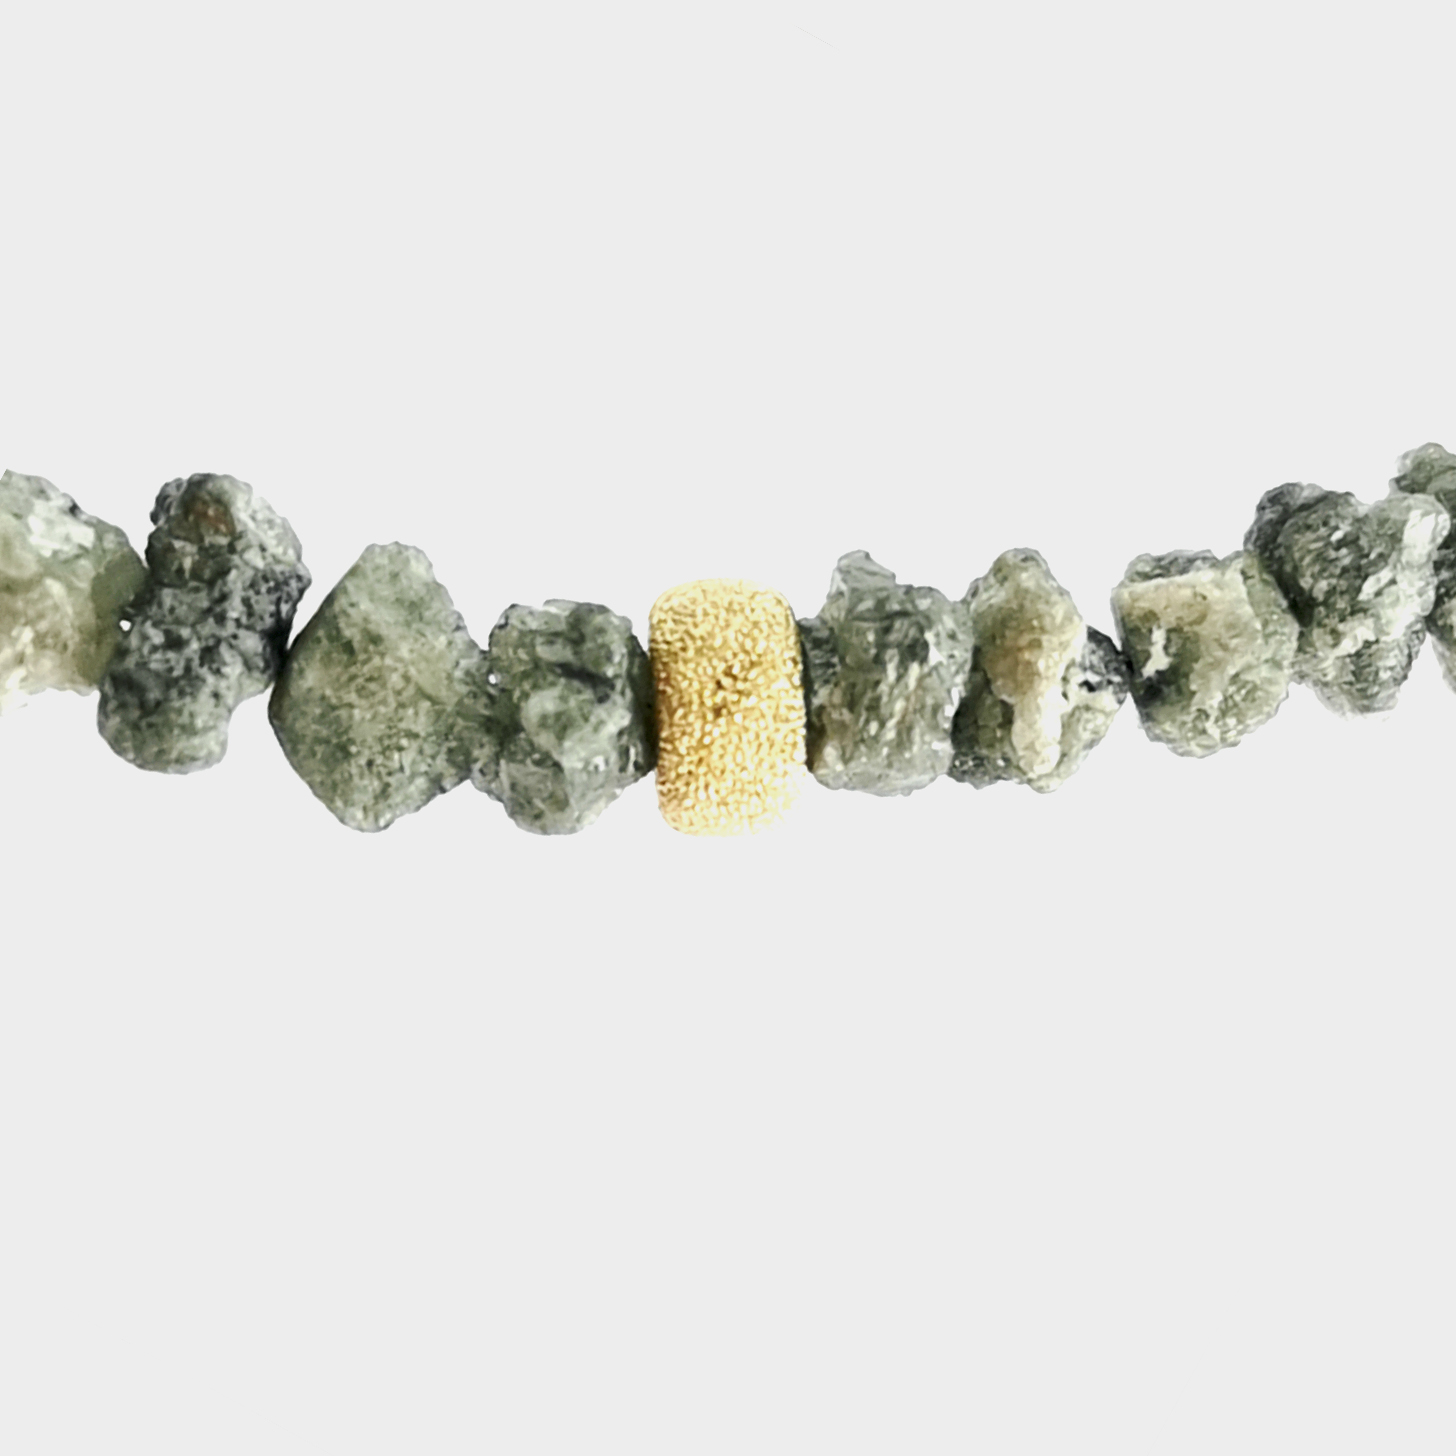 Collier mit Diamant, grau, Rohsteine, ca. 100 ct, ca. 45 cm, Edelstein echt, mit 4 Goldrondellen und Karabinerverschluss, 585 Gelbgold Sogni d´oro Facettenreich